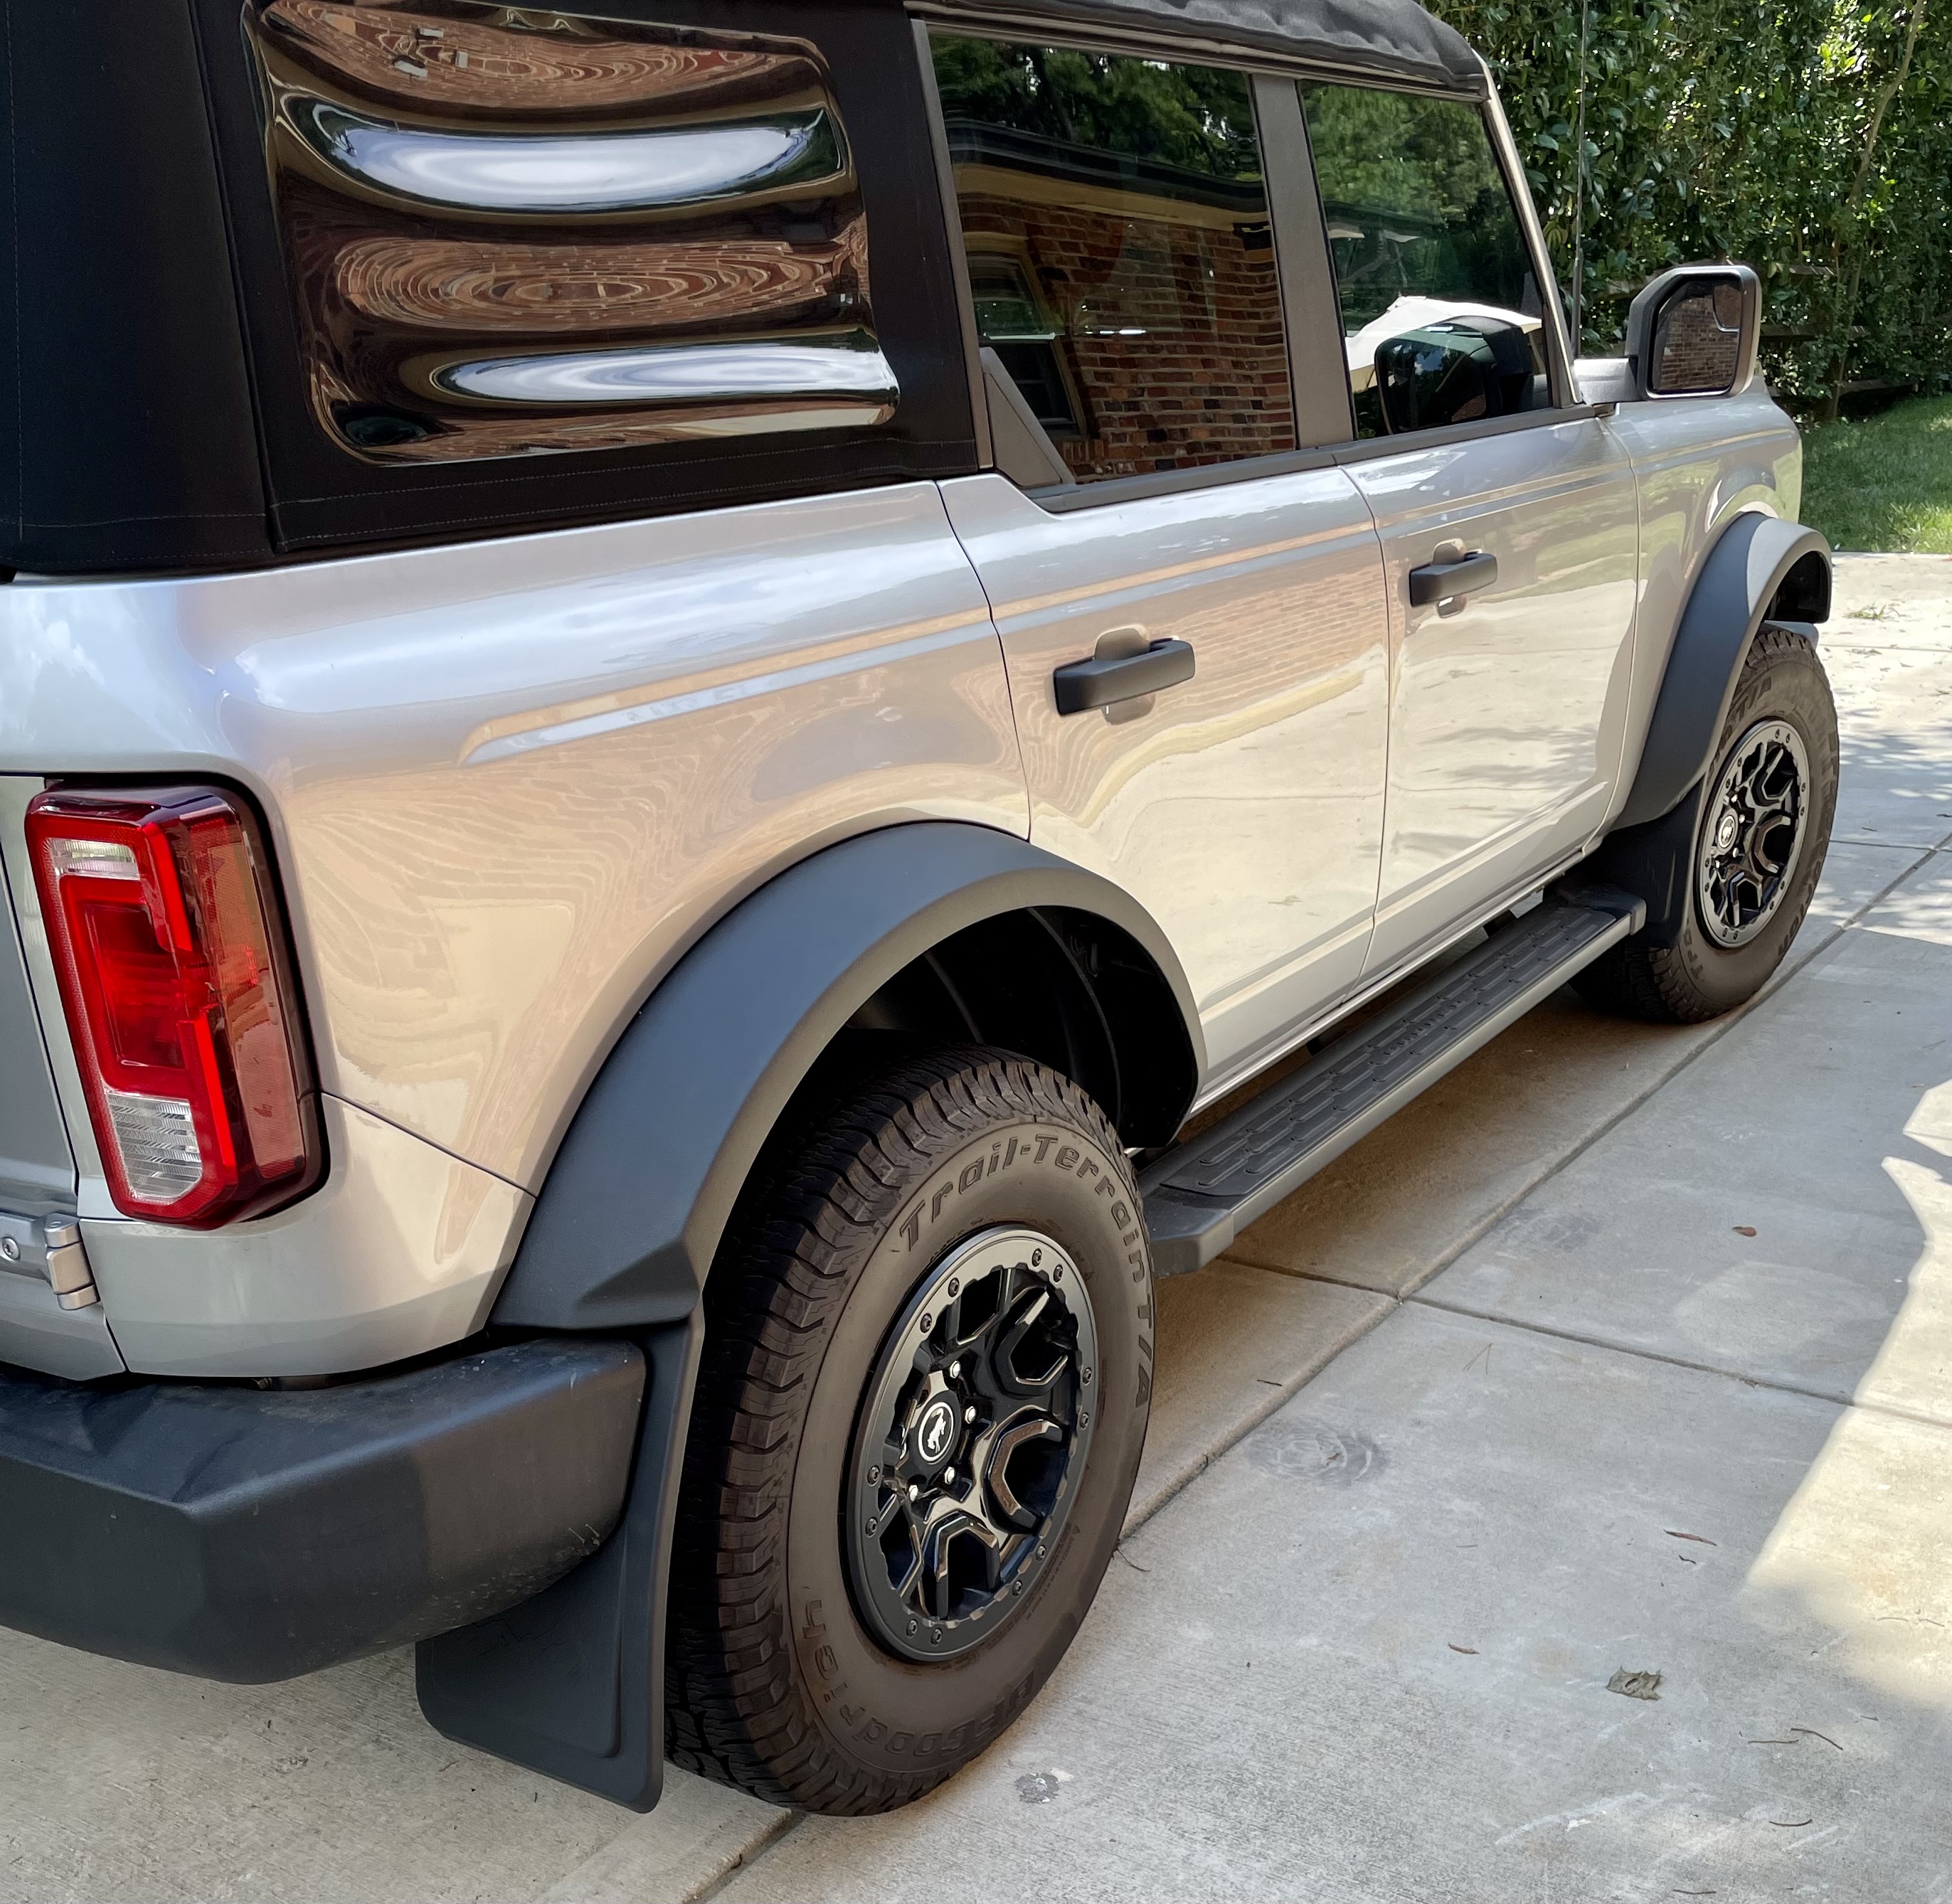 Ford Bronco Mabett front mud flaps installed 2A532B9E-DAA6-4E56-A1E3-0C6599751429